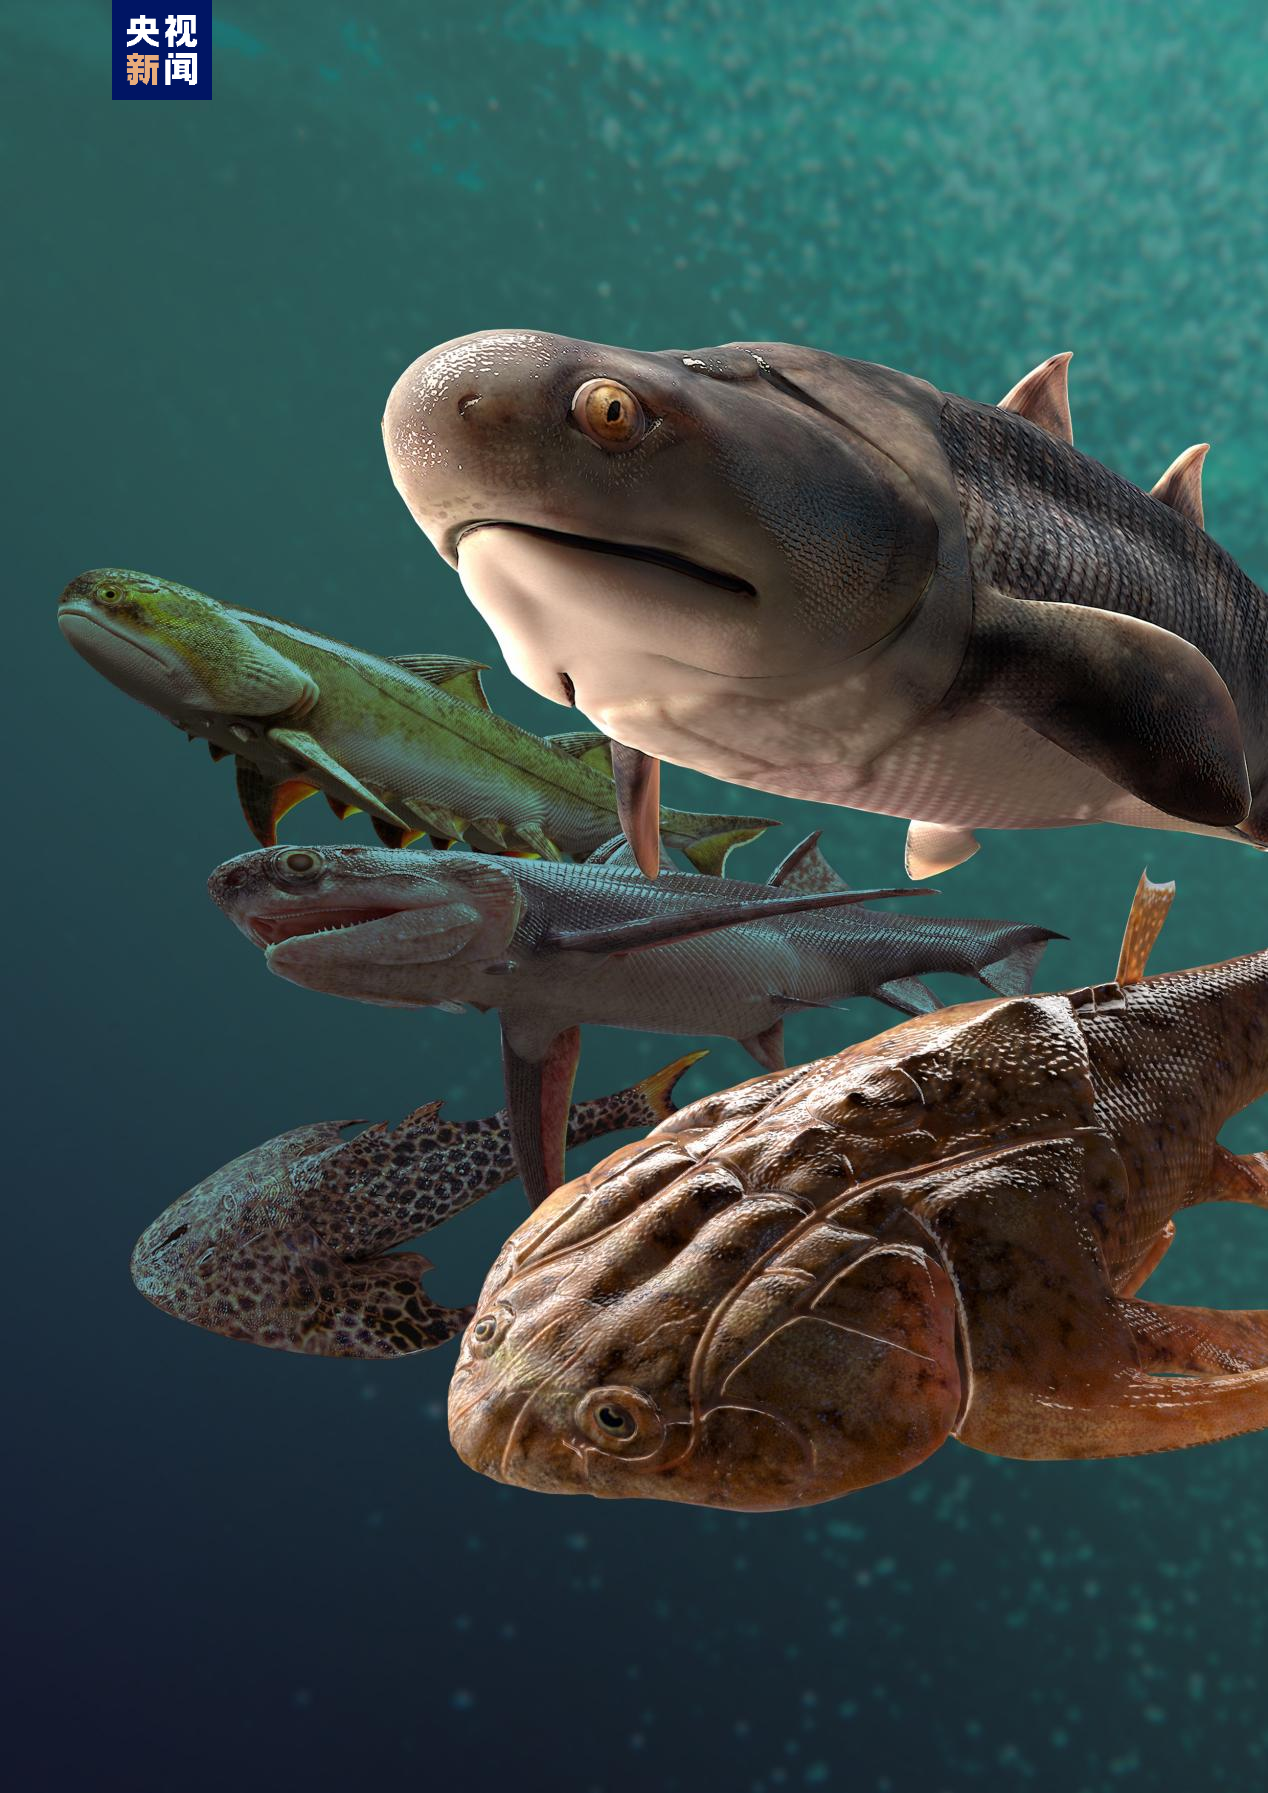 科学探索|“从鱼到人”演化过程长达5亿年左右 化石揭秘人类演化史